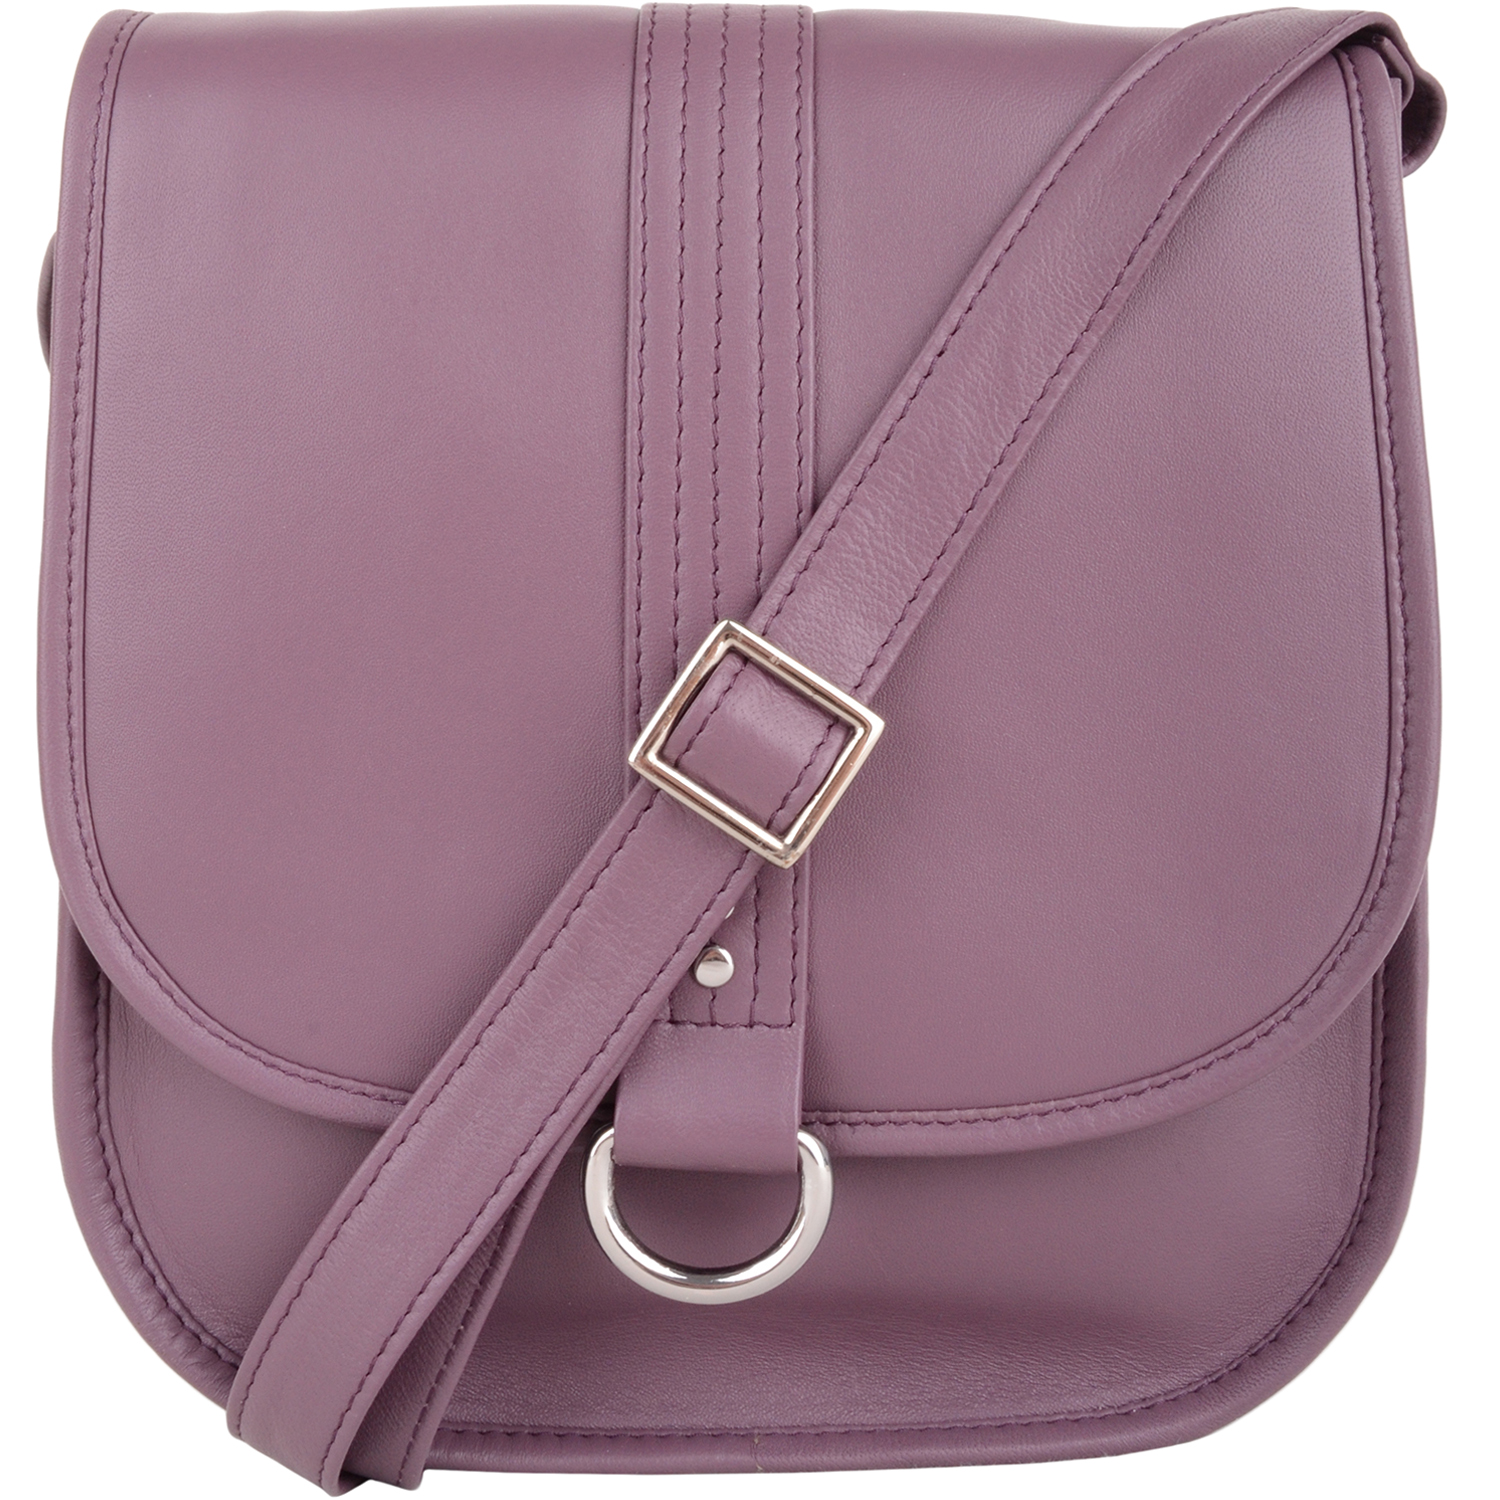 Women Designer Soft Leather Shoulder Bag Large Capacity Ladies Handbag Tote  US | eBay